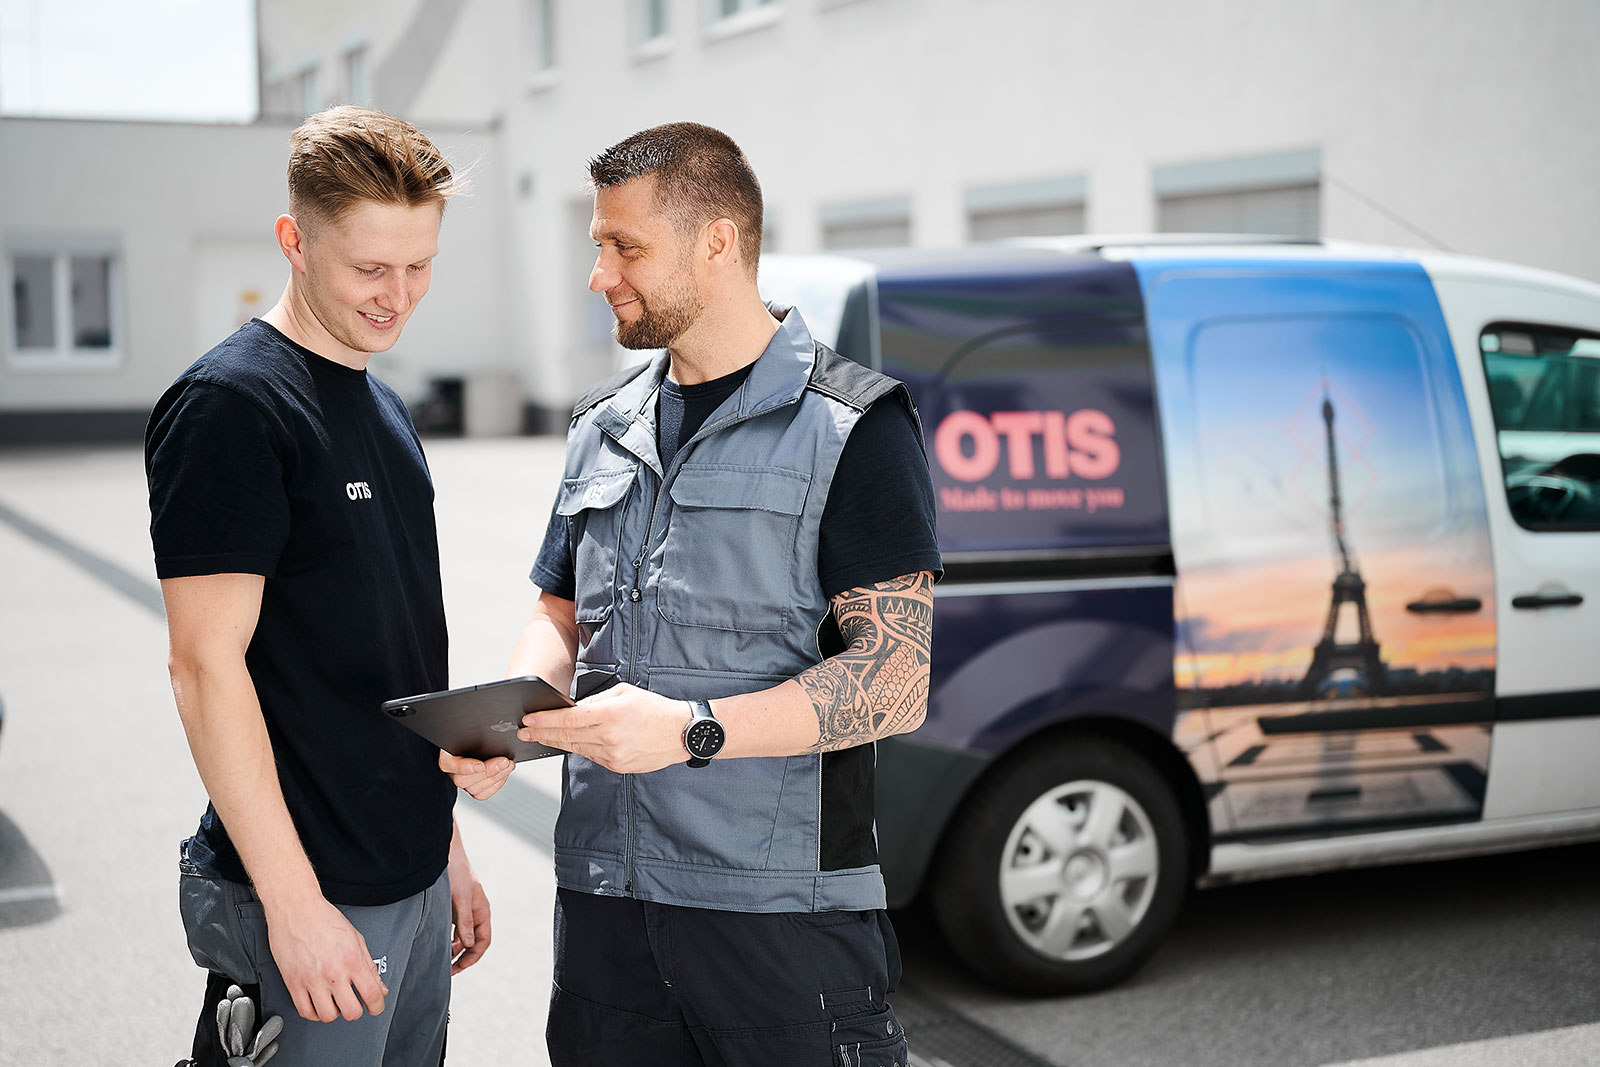 OTIS GmbH & Co. OHG